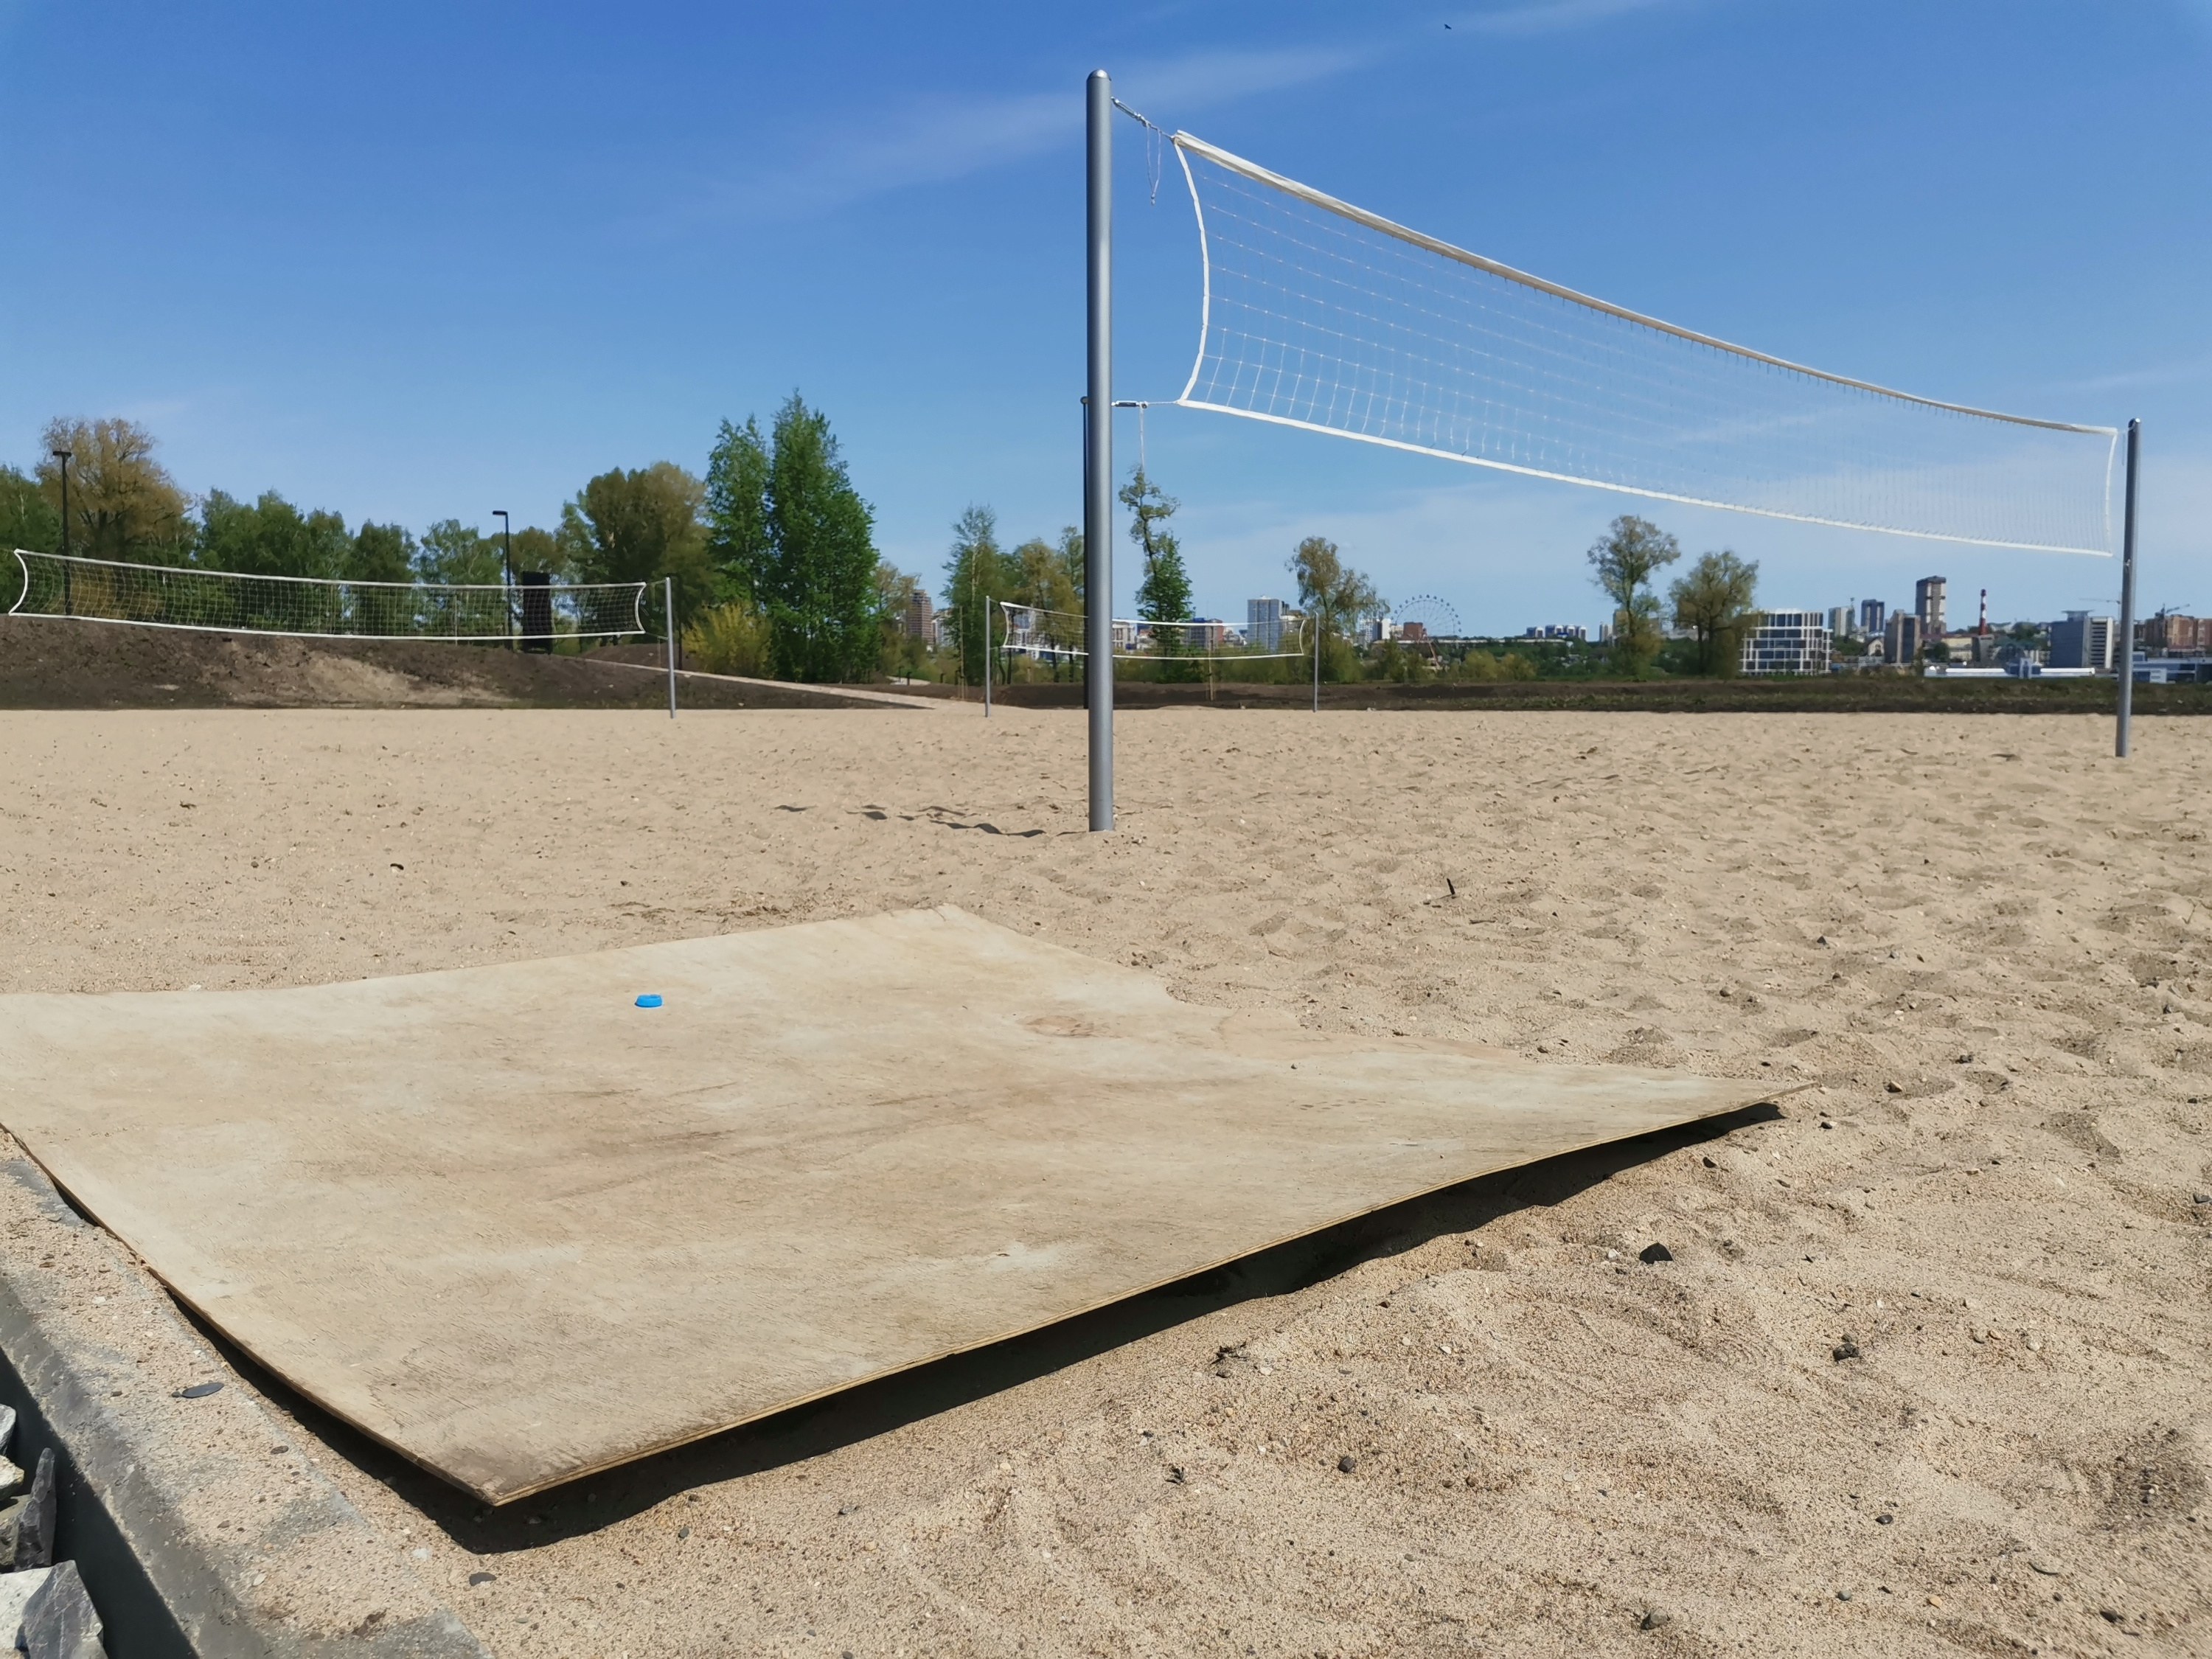 Любители поиграть в волейбол на песке сами принесли на площадку лист фанеры, который служит и местом отдыха, и зоной складирования вещей